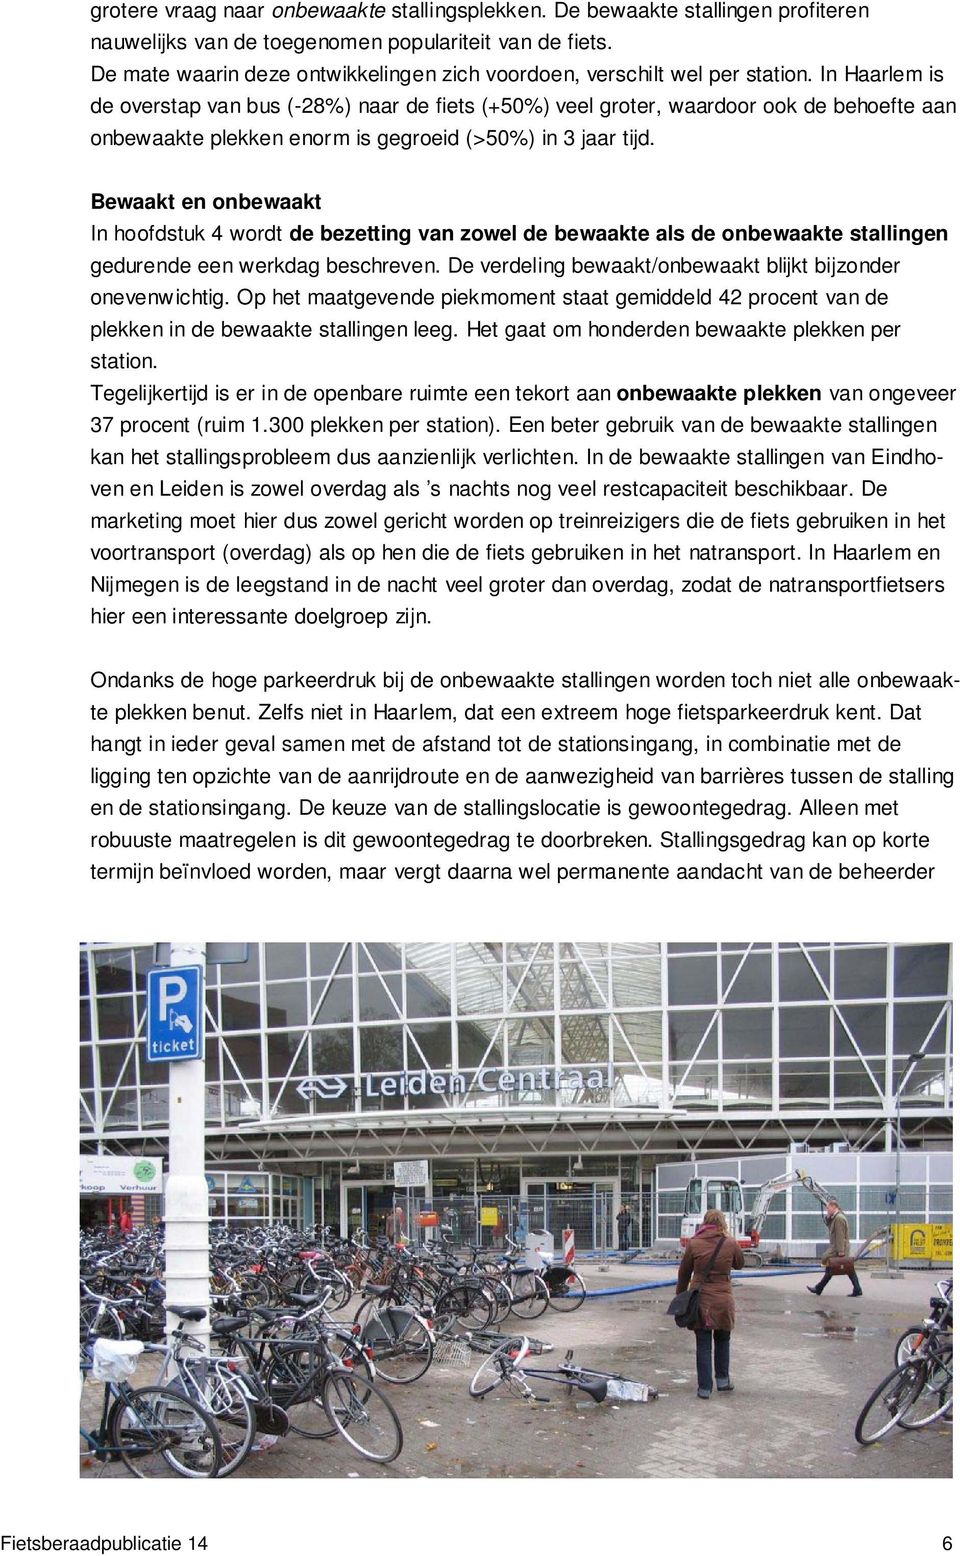 In Haarlem is de overstap van bus (-28%) naar de fiets (+50%) veel groter, waardoor ook de behoefte aan onbewaakte plekken enorm is gegroeid (>50%) in 3 jaar tijd.